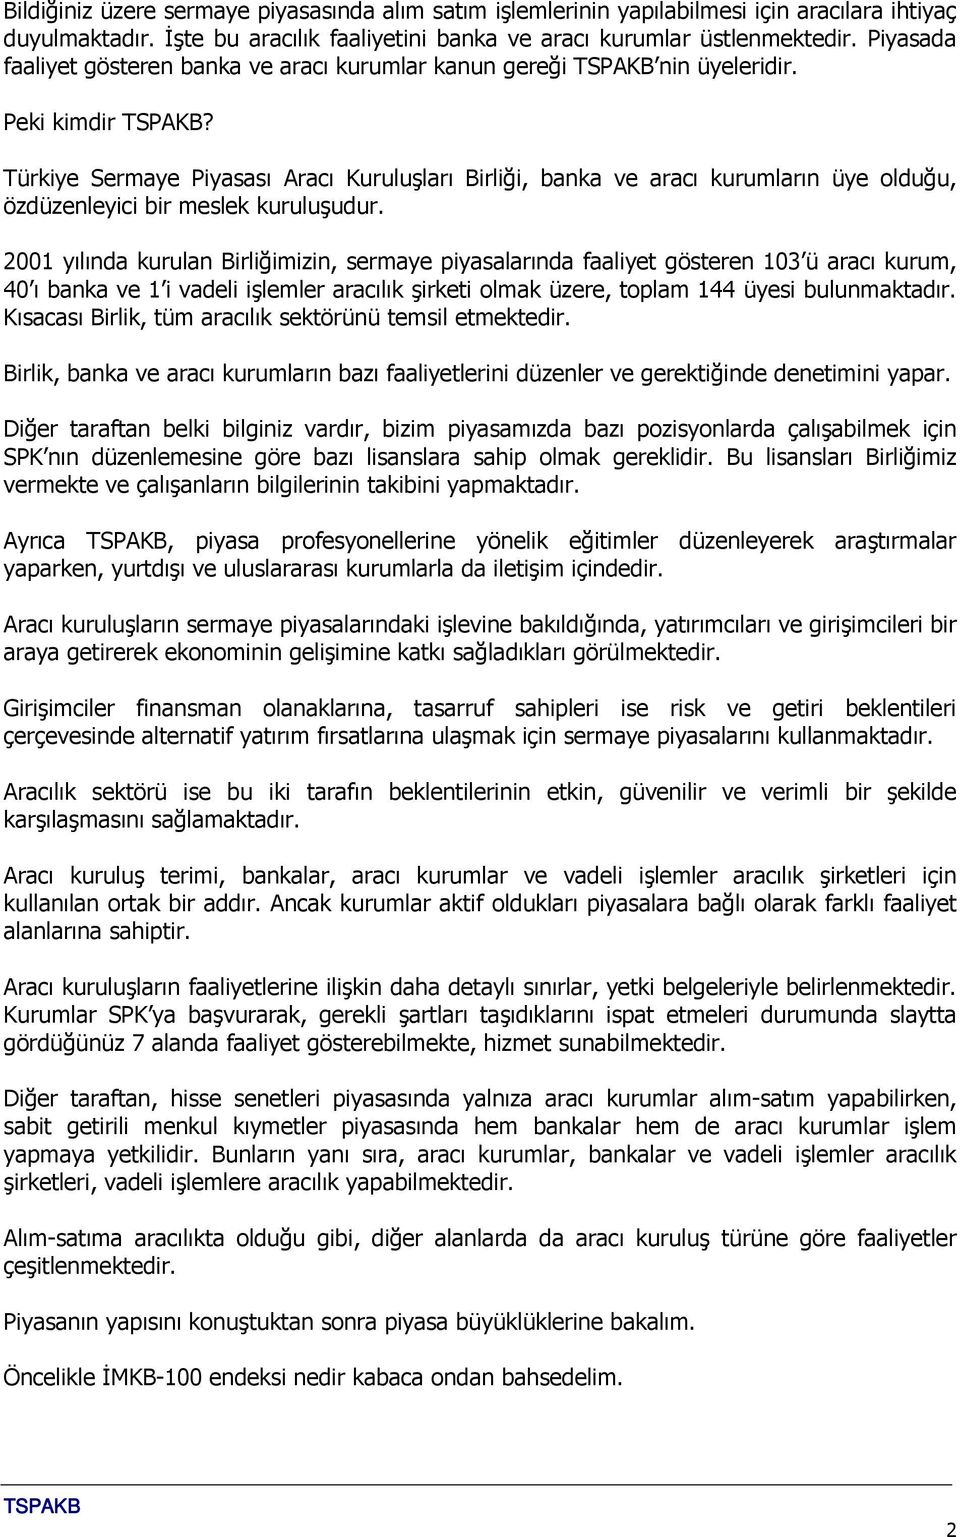 Türkiye Sermaye Piyasası Aracı Kuruluşları Birliği, banka ve aracı kurumların üye olduğu, özdüzenleyici bir meslek kuruluşudur.